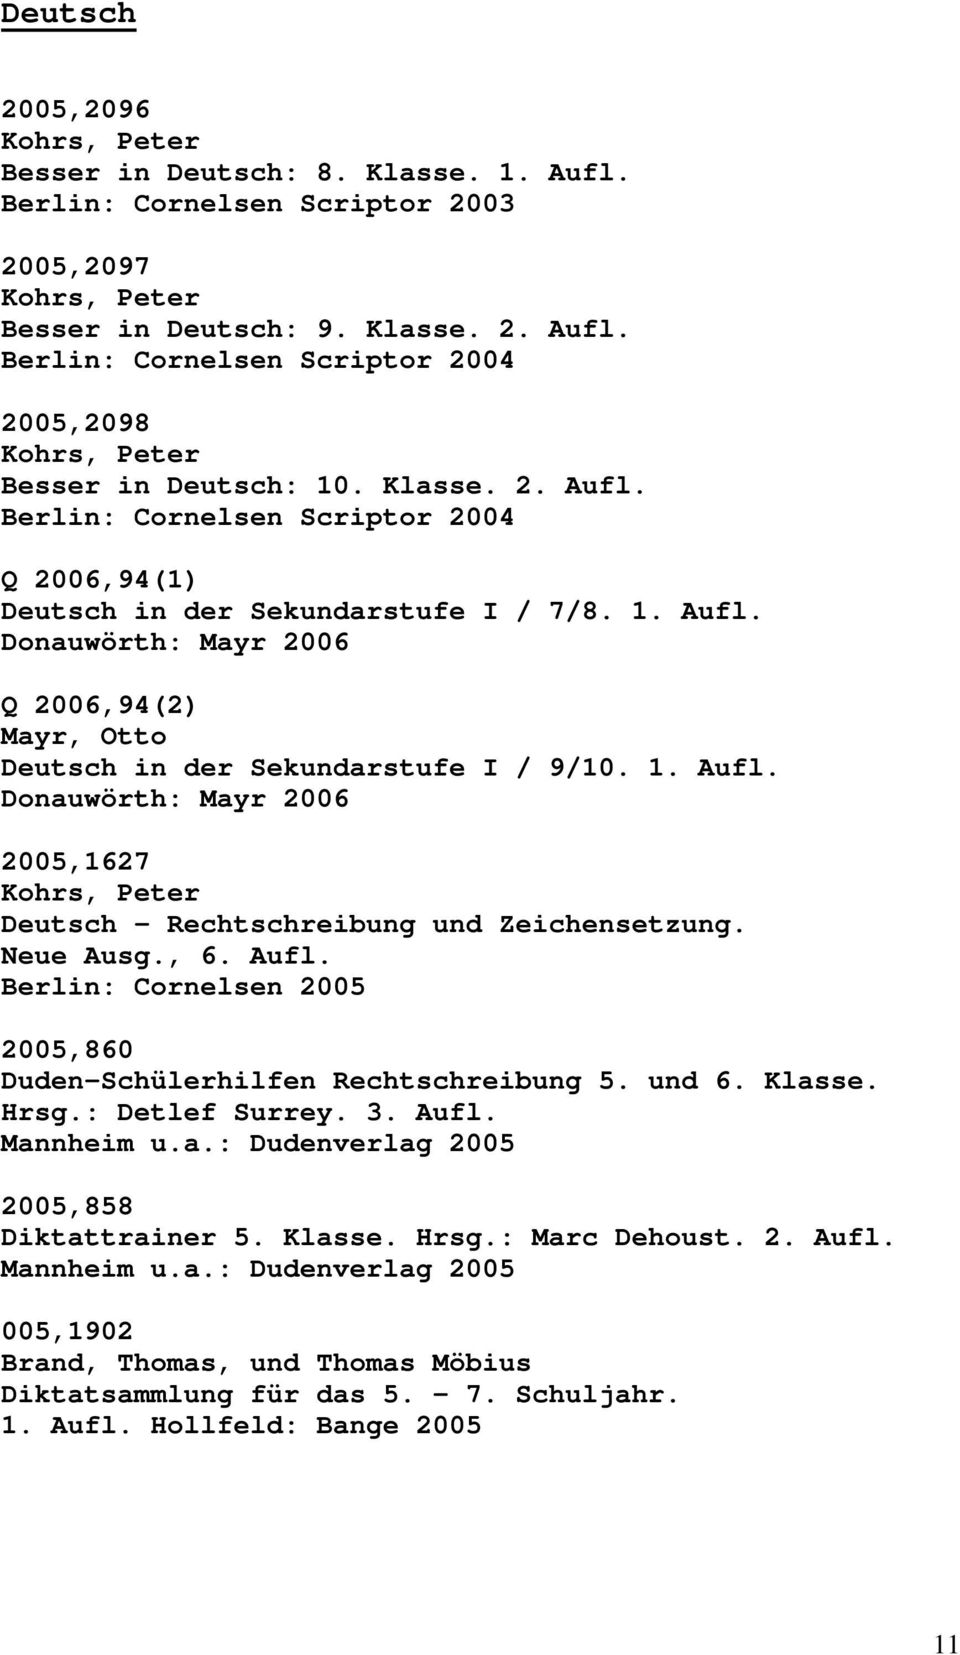 Neue Ausg., 6. Aufl. 2005,860 Duden-Schülerhilfen Rechtschreibung 5. und 6. Klasse. Hrsg.: Detlef Surrey. 3. Aufl. Mannheim u.a.: Dudenverlag 2005 2005,858 Diktattrainer 5. Klasse. Hrsg.: Marc Dehoust.